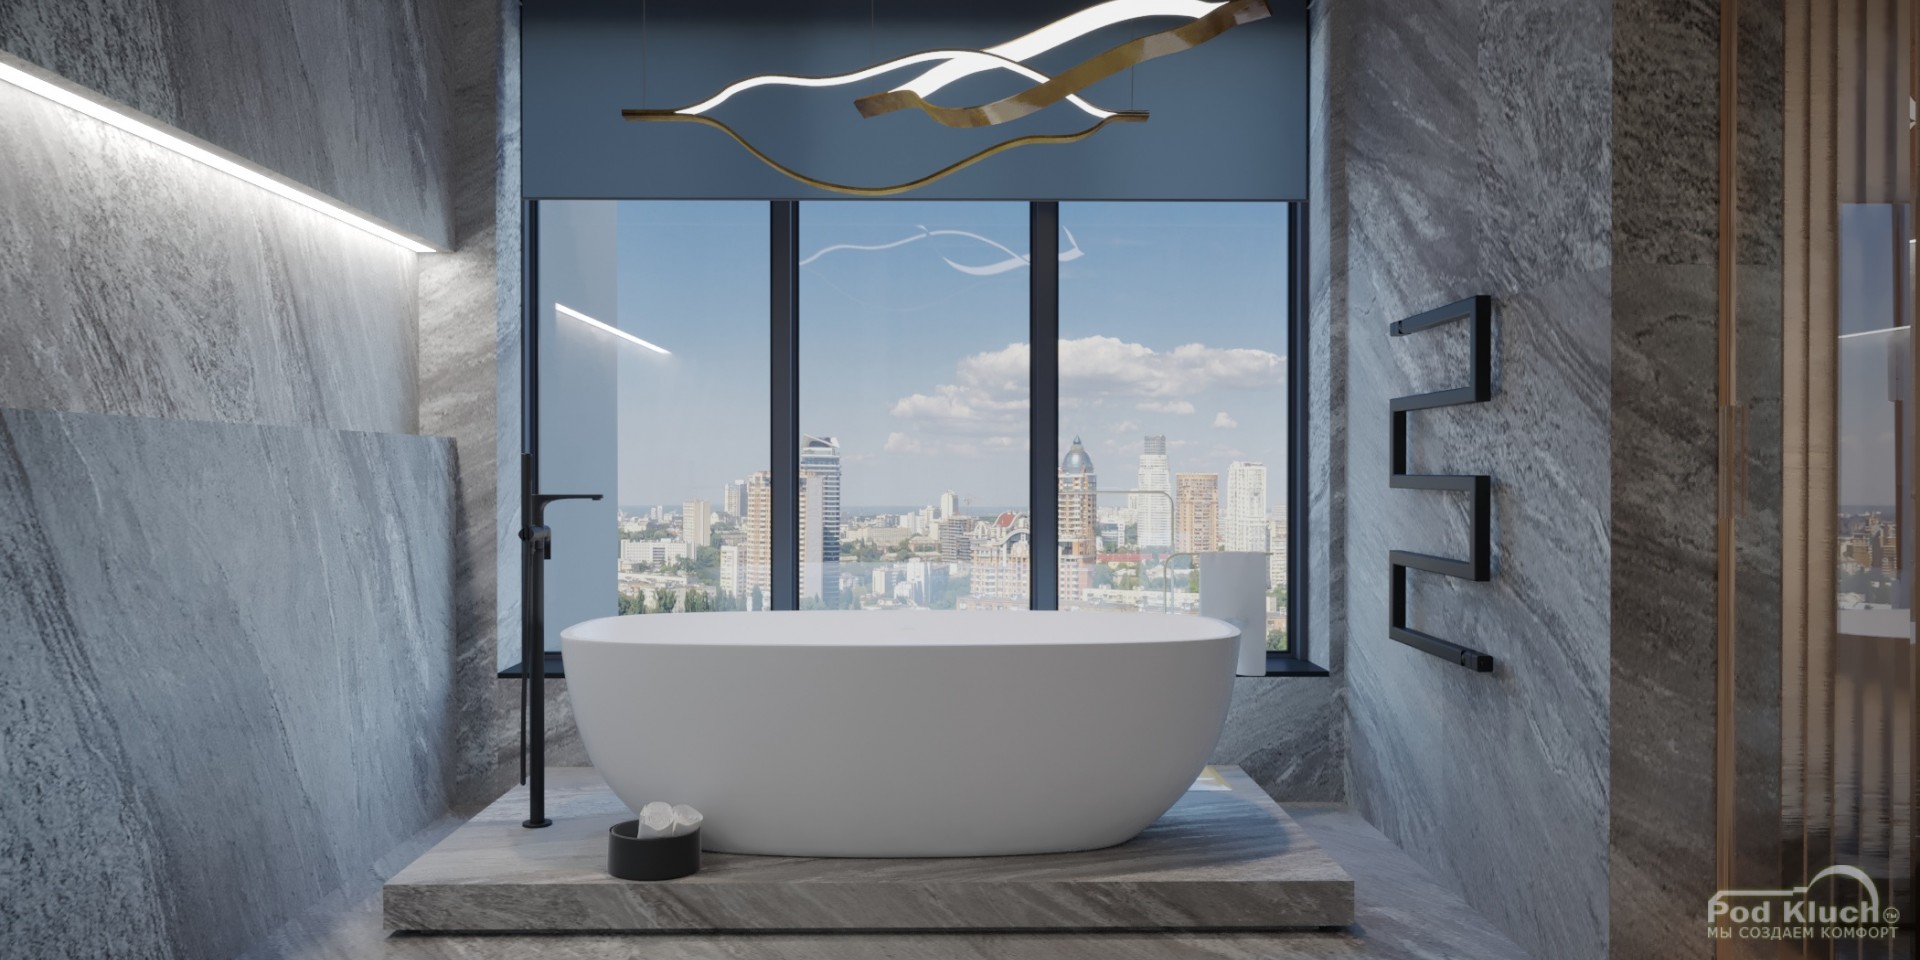 Интерьер ванной комнаты - Квартира в центре Sky Line 250 кв.м